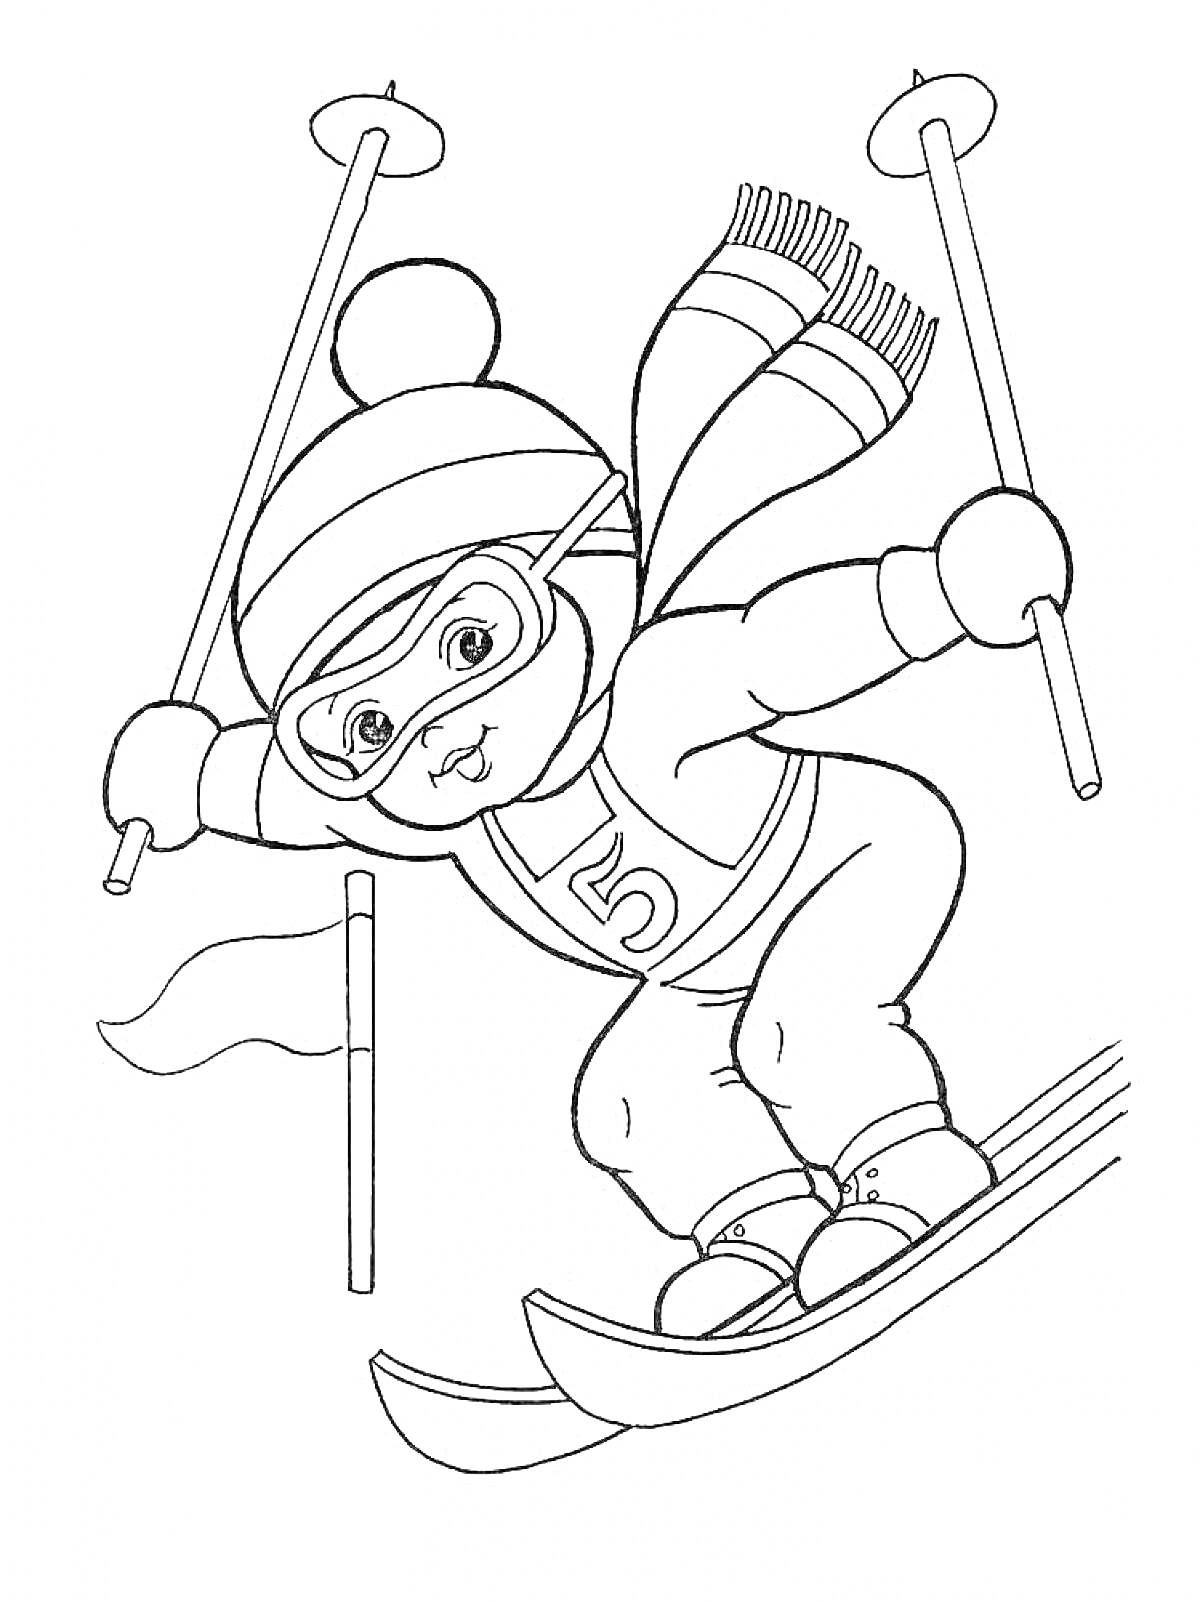 Ребенок на лыжах в шапке и шарфе с лыжными палками и номеровым значком